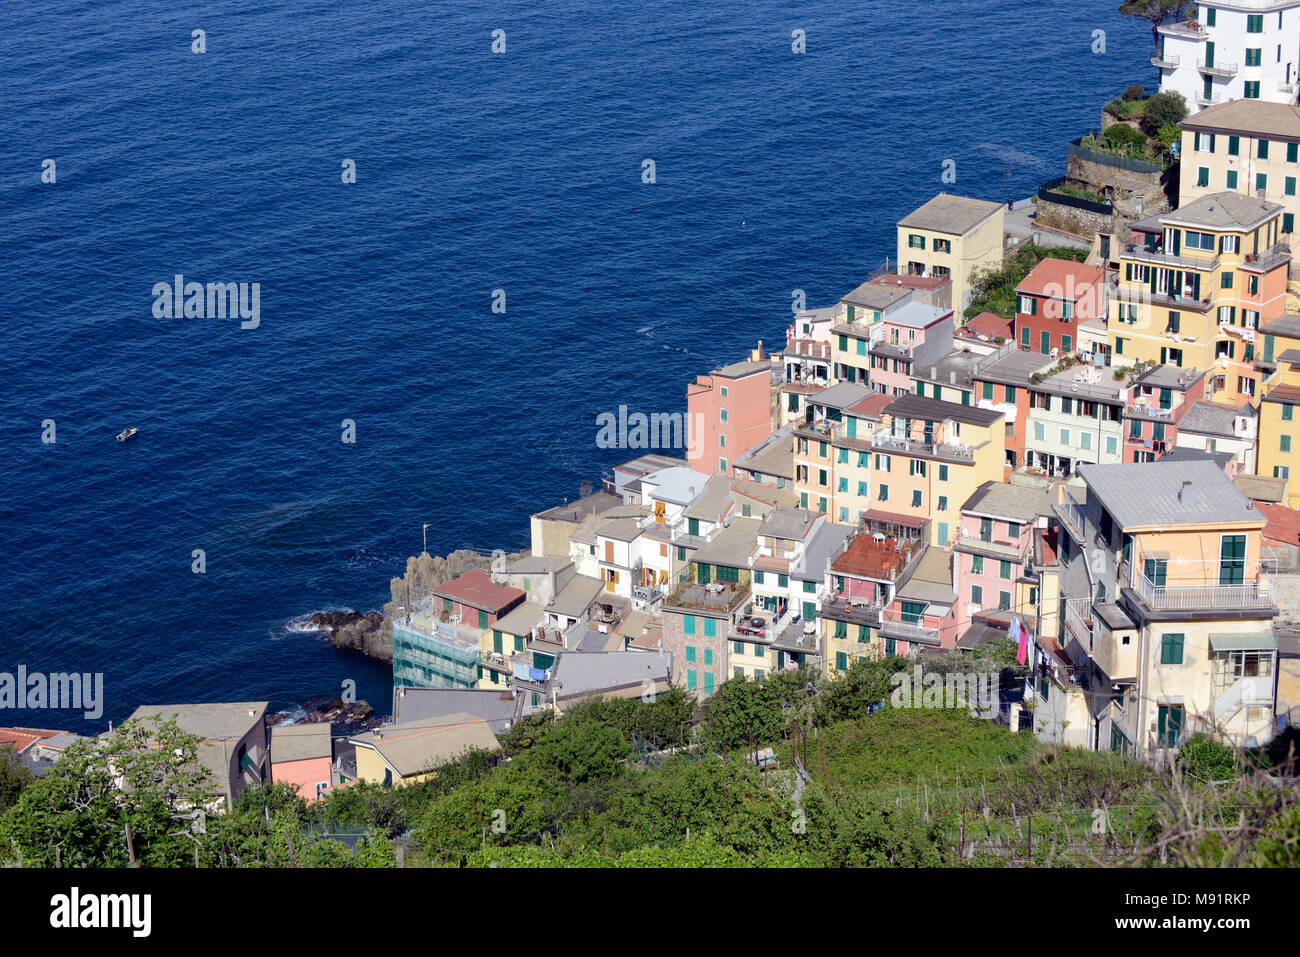 Clifftop village of Riomaggiore, Cinque Terre, UNESCO World Heritage Site, Liguria, Italy, Europe Stock Photo